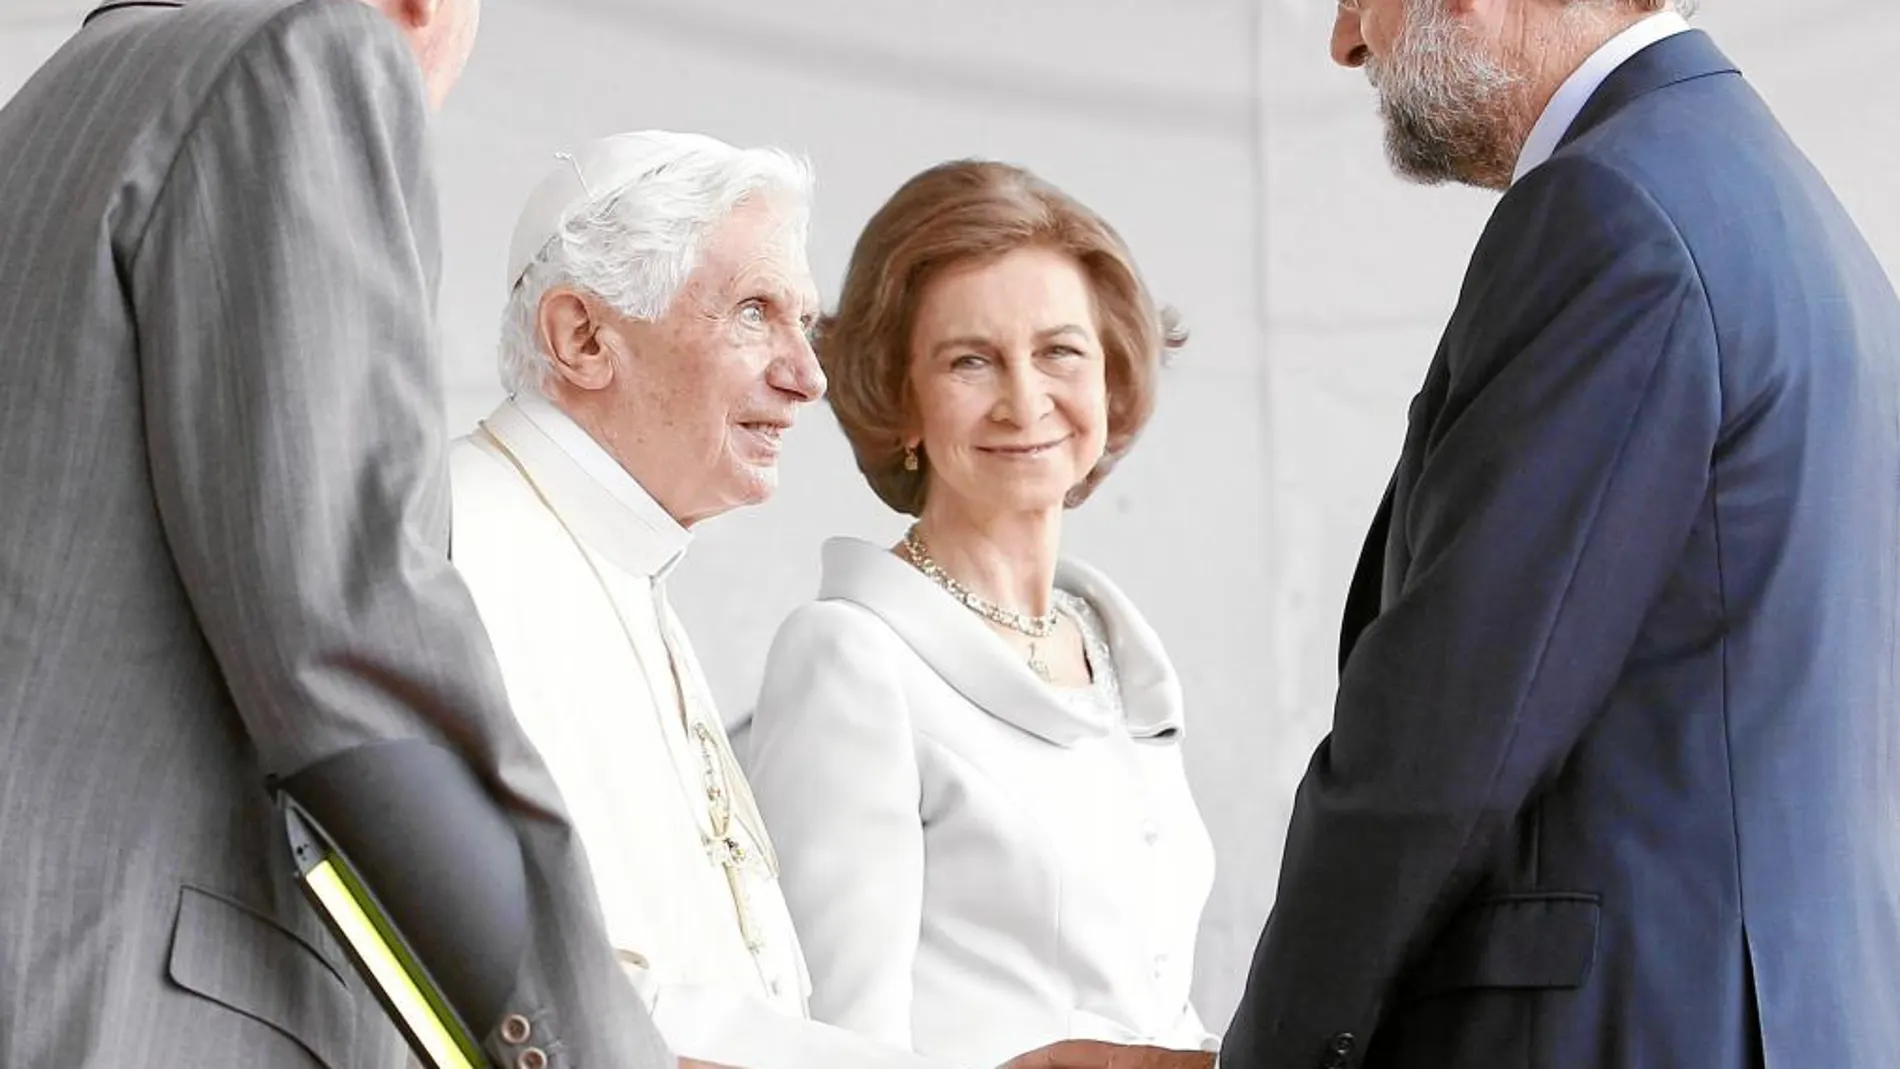 Instantánea tomada en Madrid el 18 de agosto de 2011 cuando el Pontífice llegó a España con motivo de la Jornada Mundial de la Juventud (JMJ) y fue recibido por los Reyes y el presidente del Gobierno, Mariano Rajoy